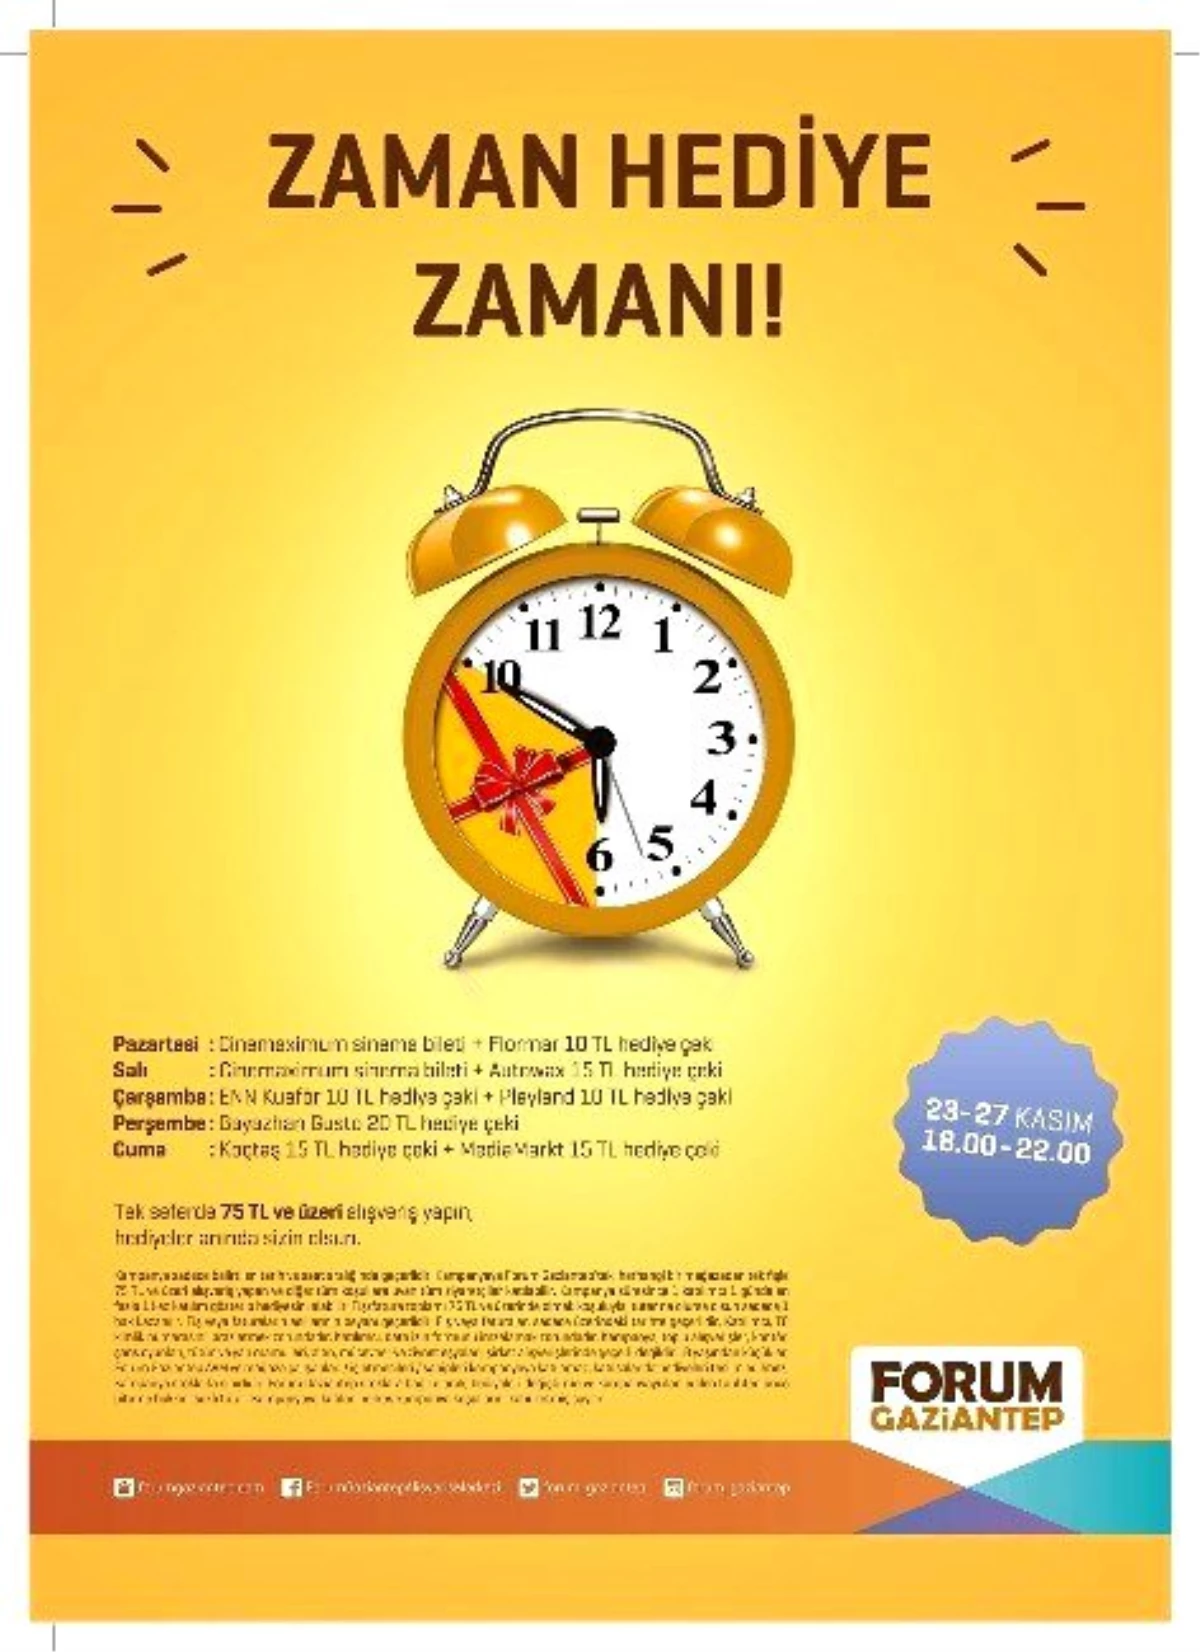 Forum Gaziantep Ziyaretçilerine Hediye Dağıttı